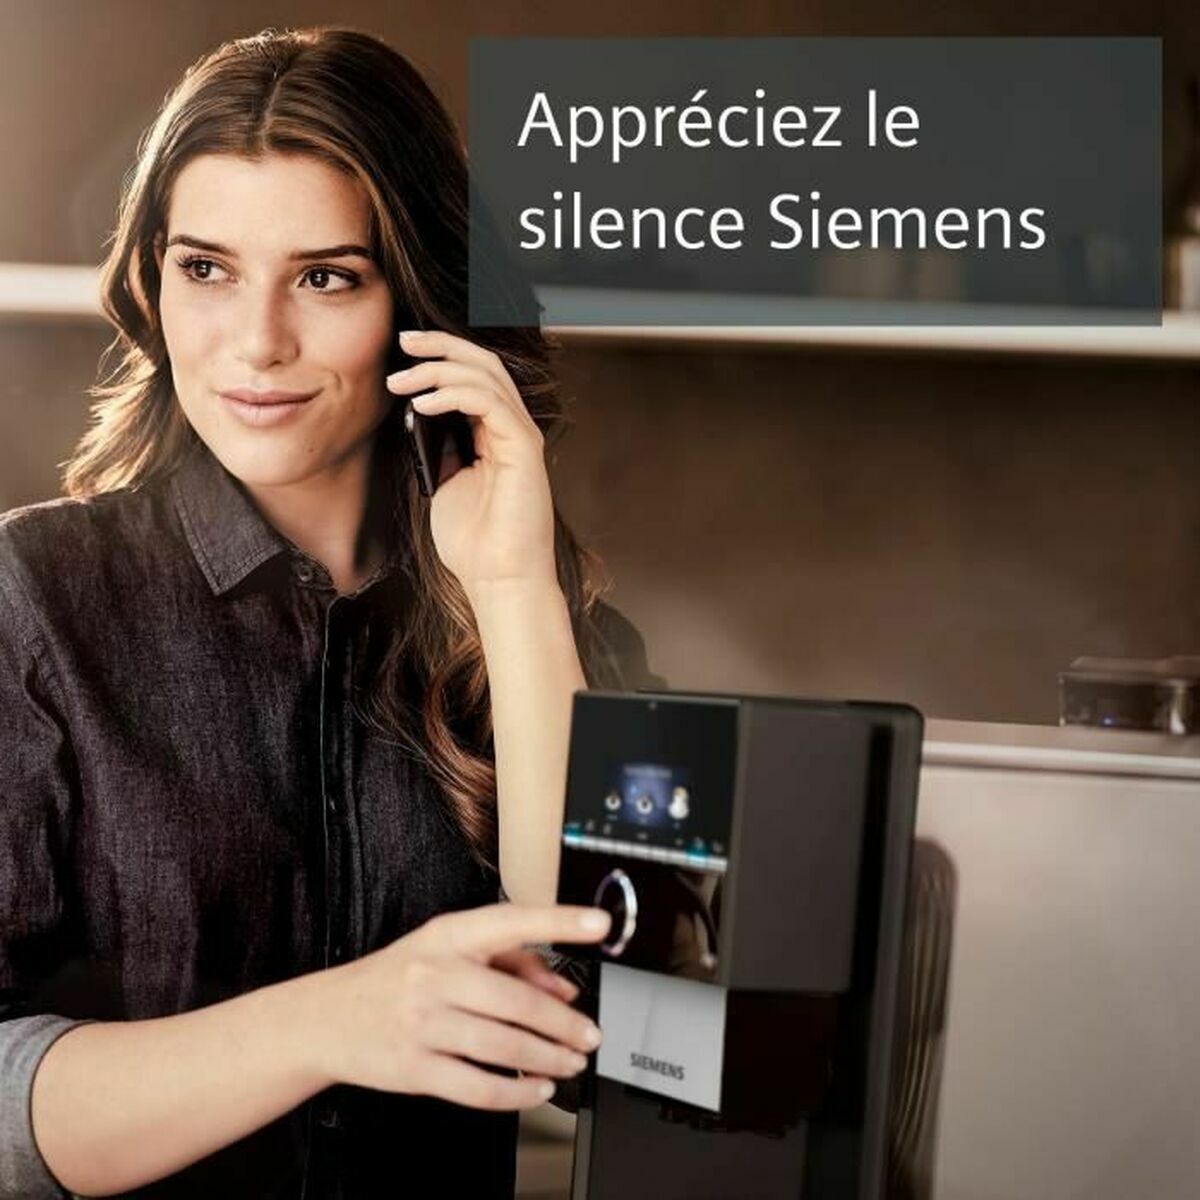 Superautomatische Kaffeemaschine Siemens AG s300 Schwarz Ja 1500 W 19 bar 2,3 L 2 Kopper